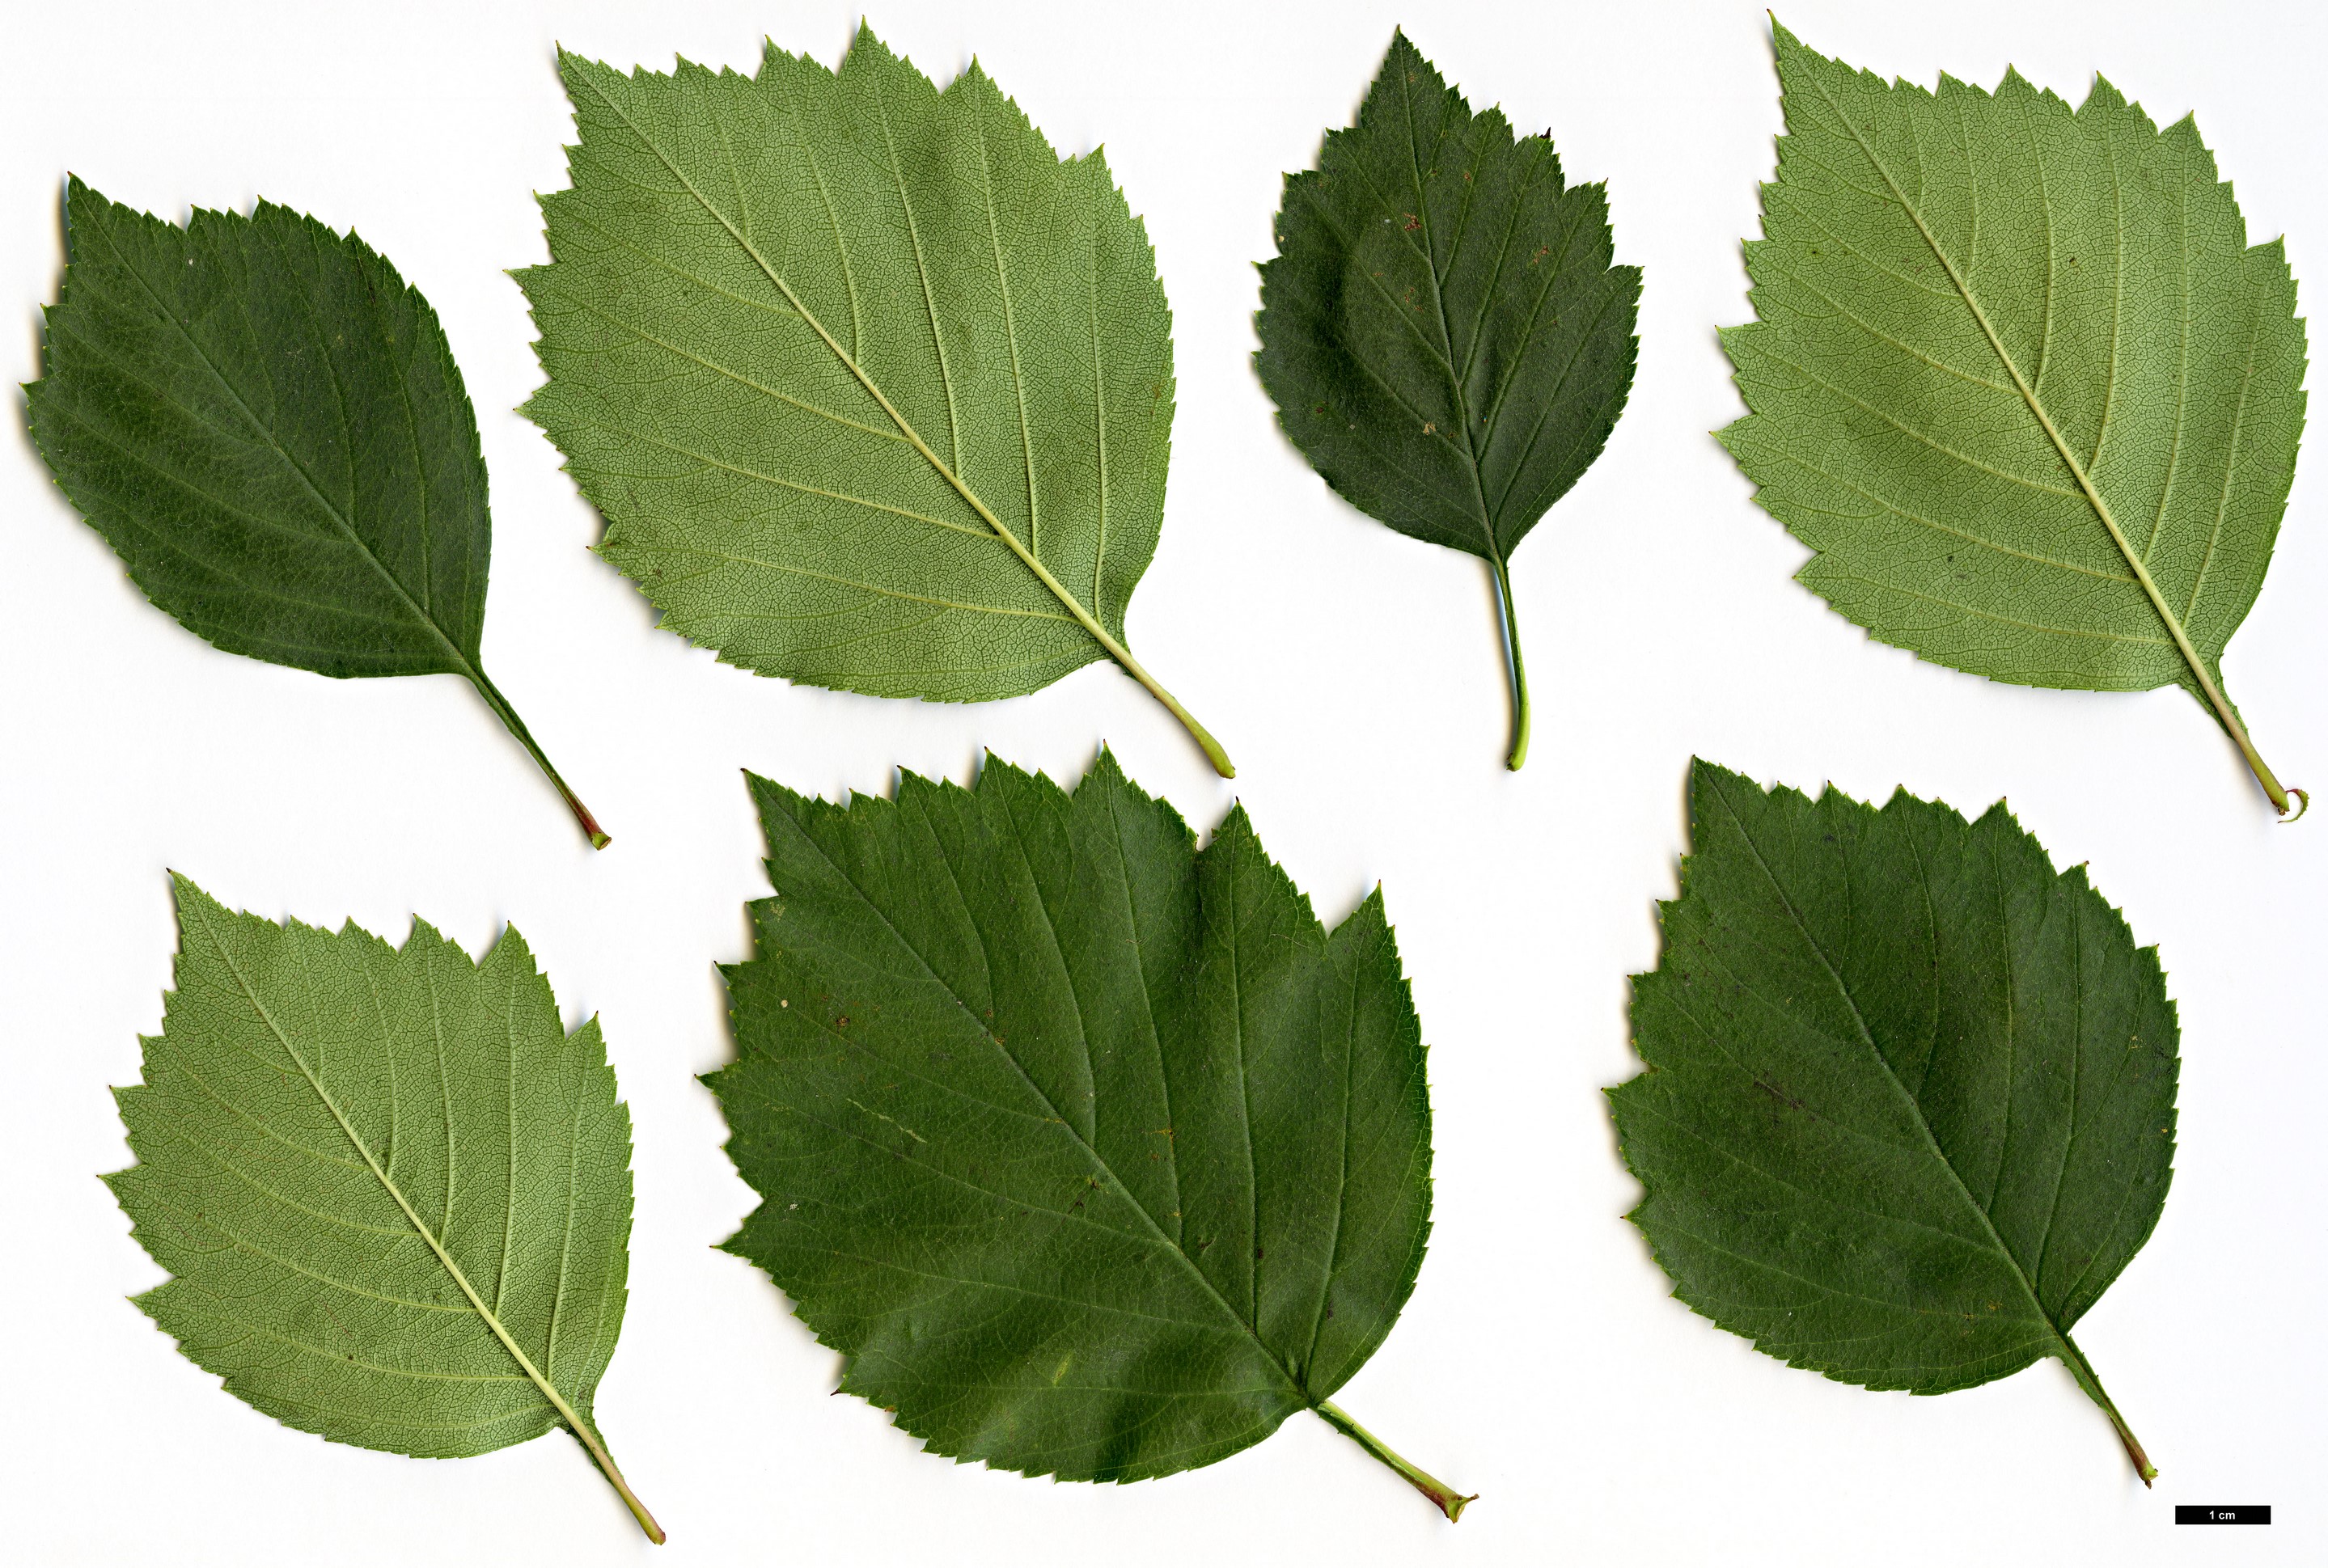 High resolution image: Family: Rosaceae - Genus: Crataegus - Taxon: iracunda - SpeciesSub: var. populnea